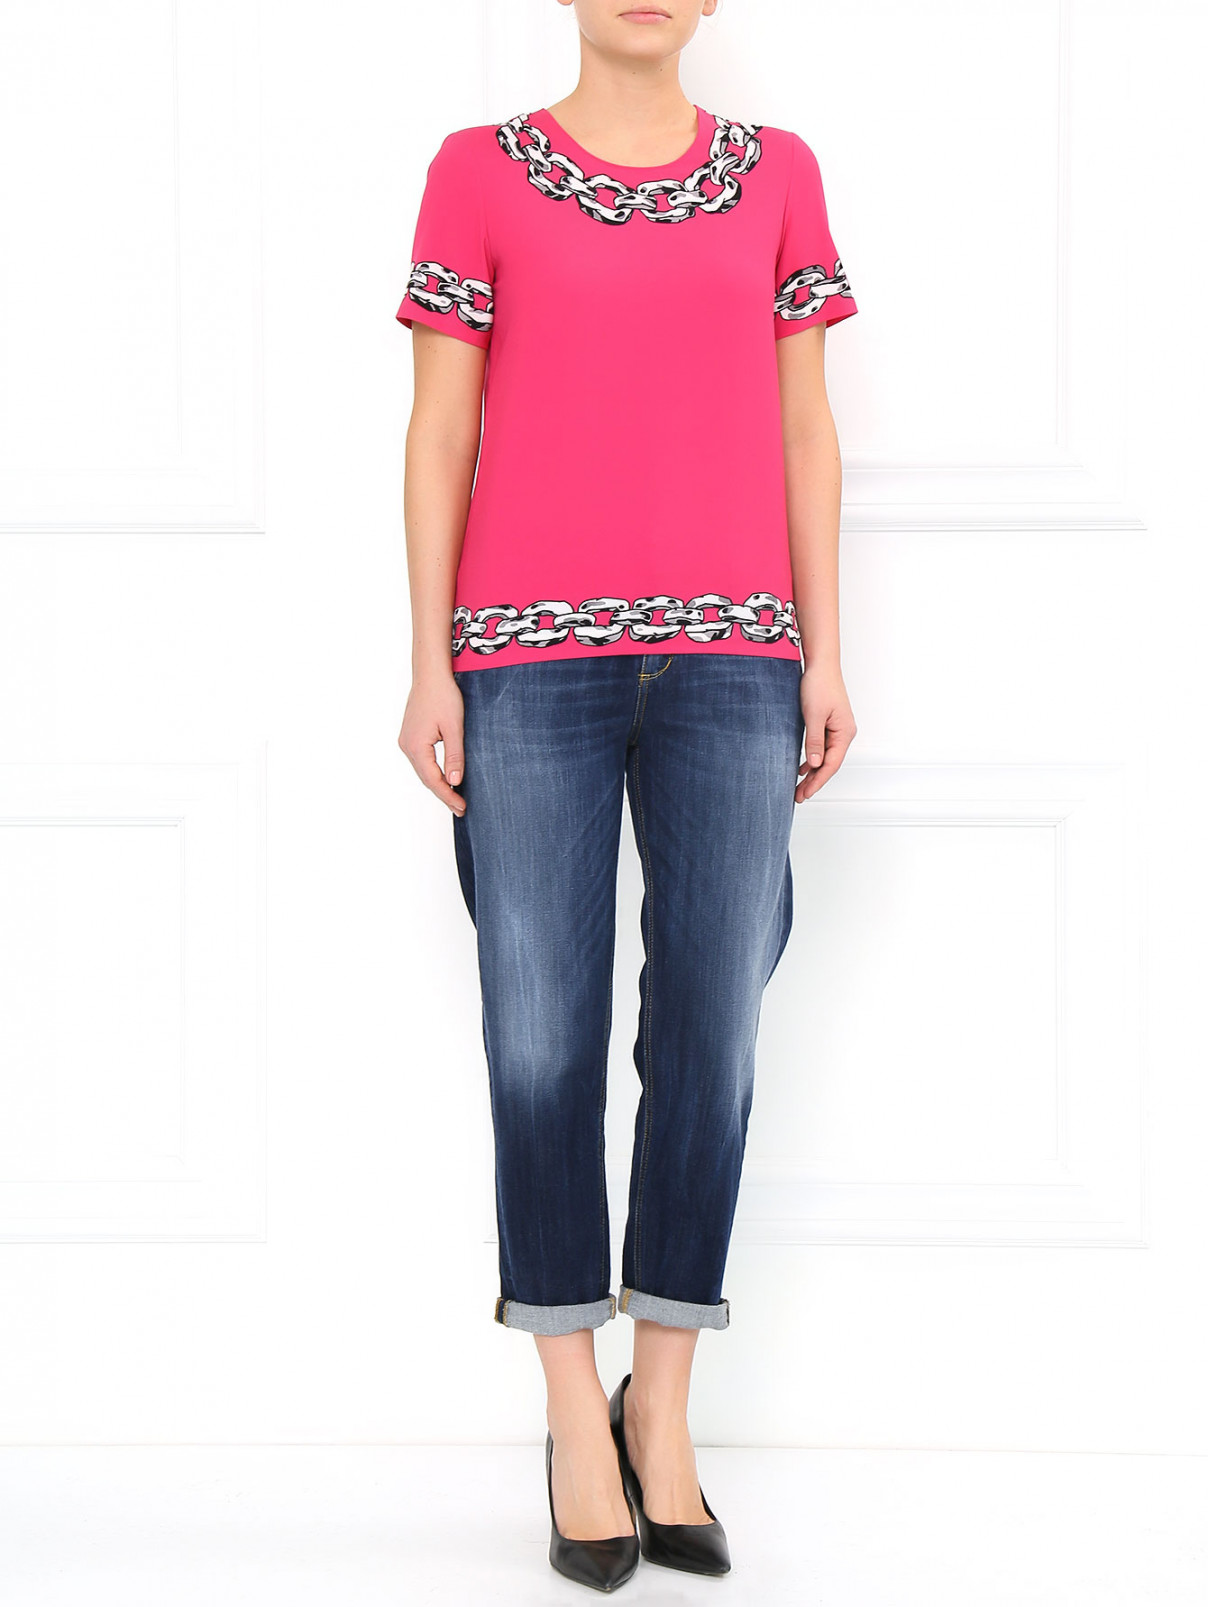 Блуза свободного фасона с принтом Moschino Cheap&Chic  –  Модель Общий вид  – Цвет:  Фиолетовый